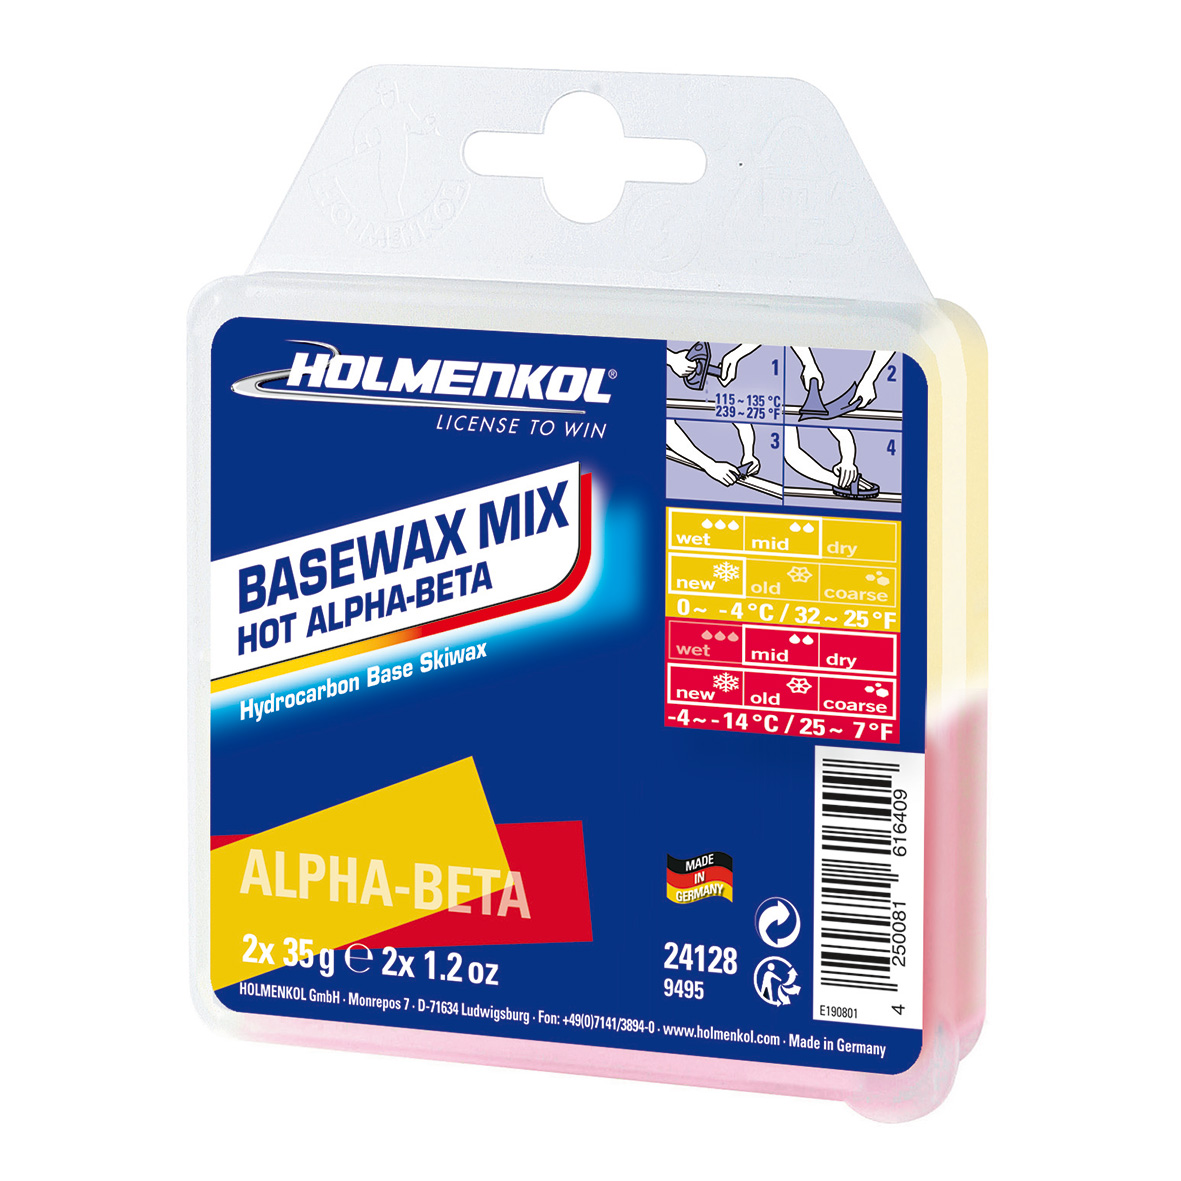 Basewax Mix Hot Alpha-Beta